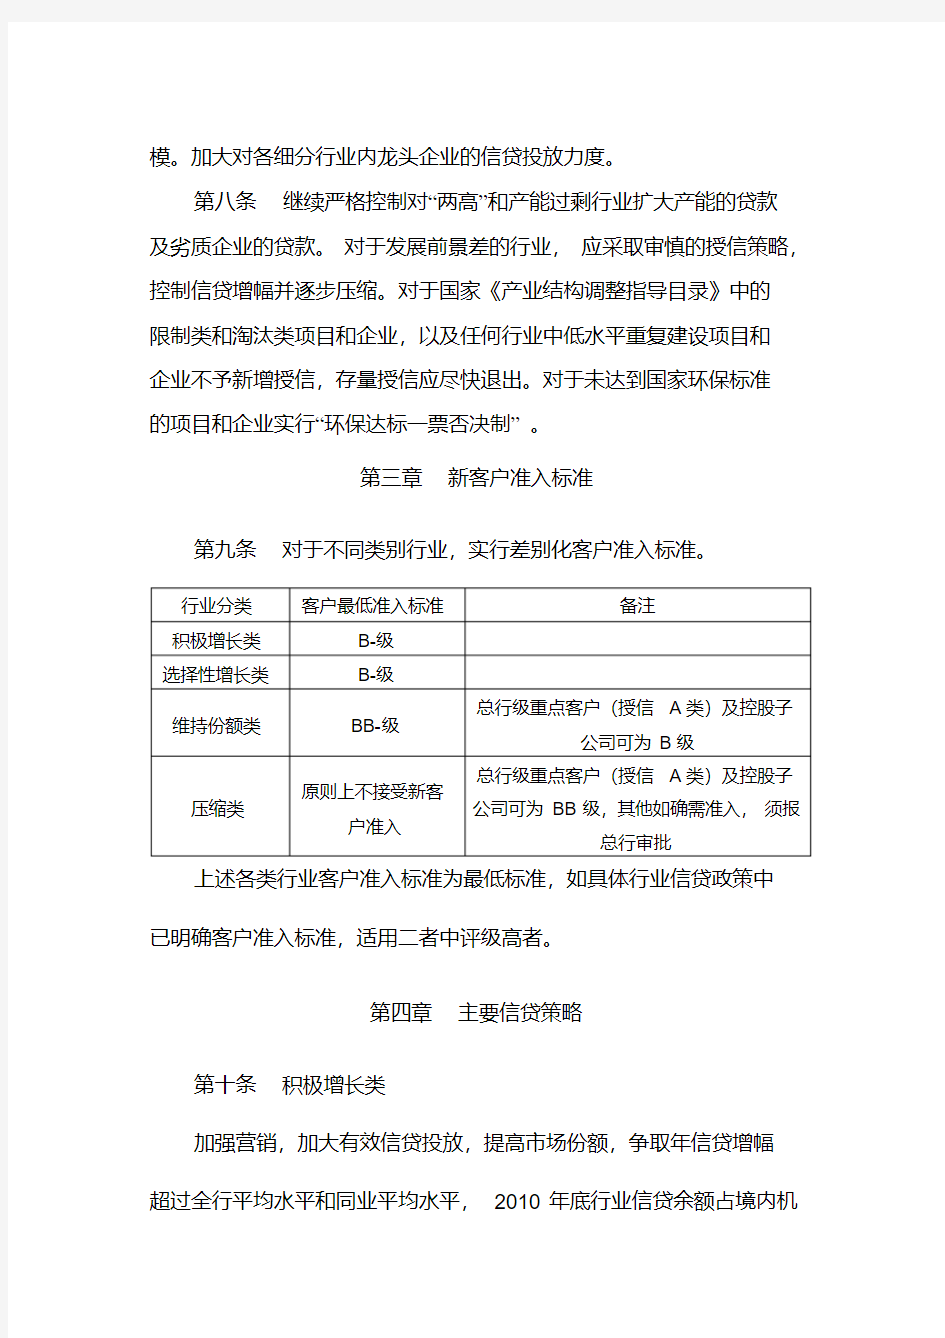 中国银行股份有限公司行业信贷投向指引2010年版